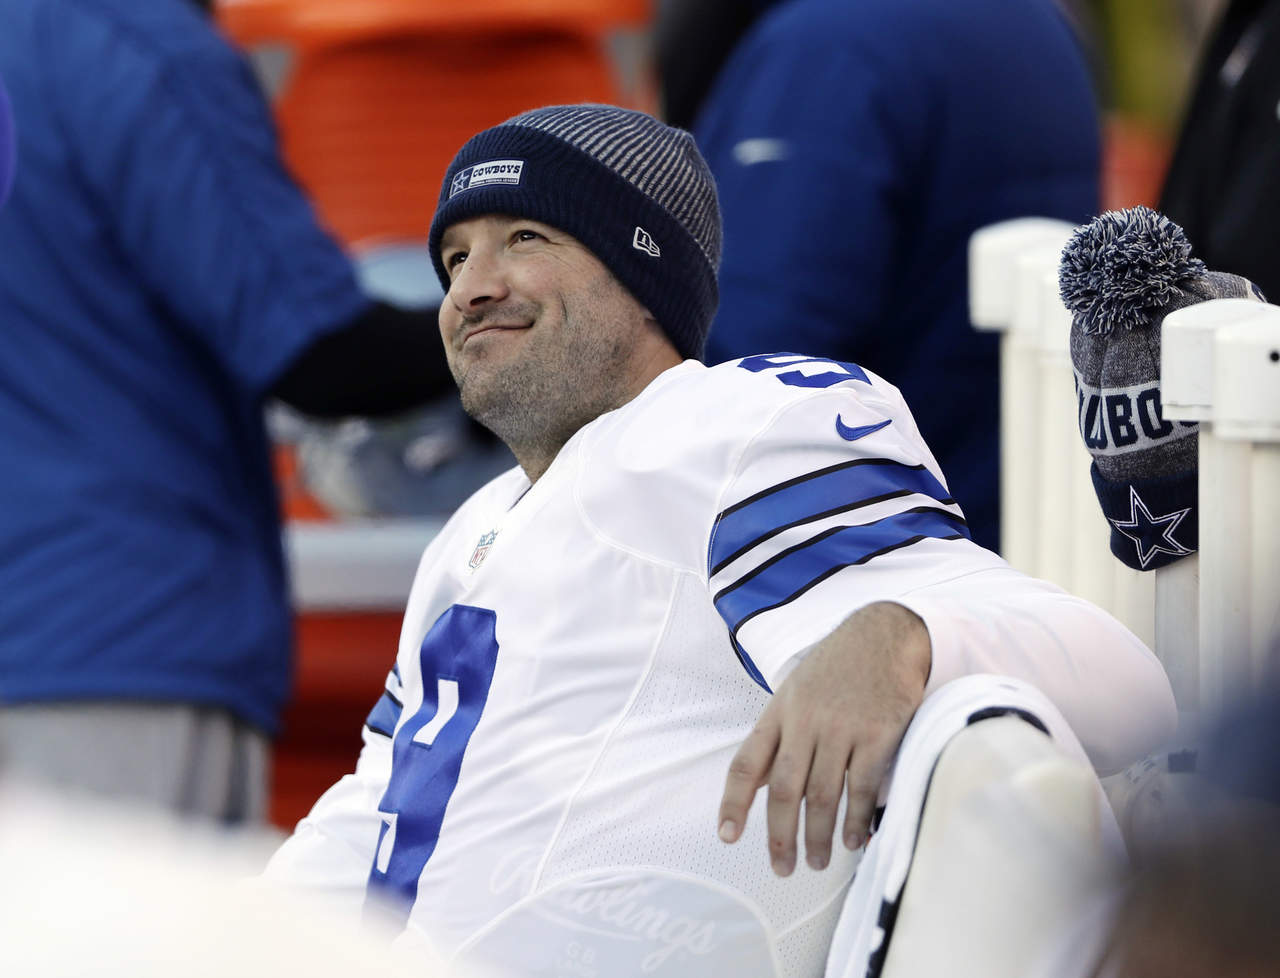  La irrupción de Prescott dio rienda suelta a las conjeturas de que Romo tenía los días contados en Dallas.